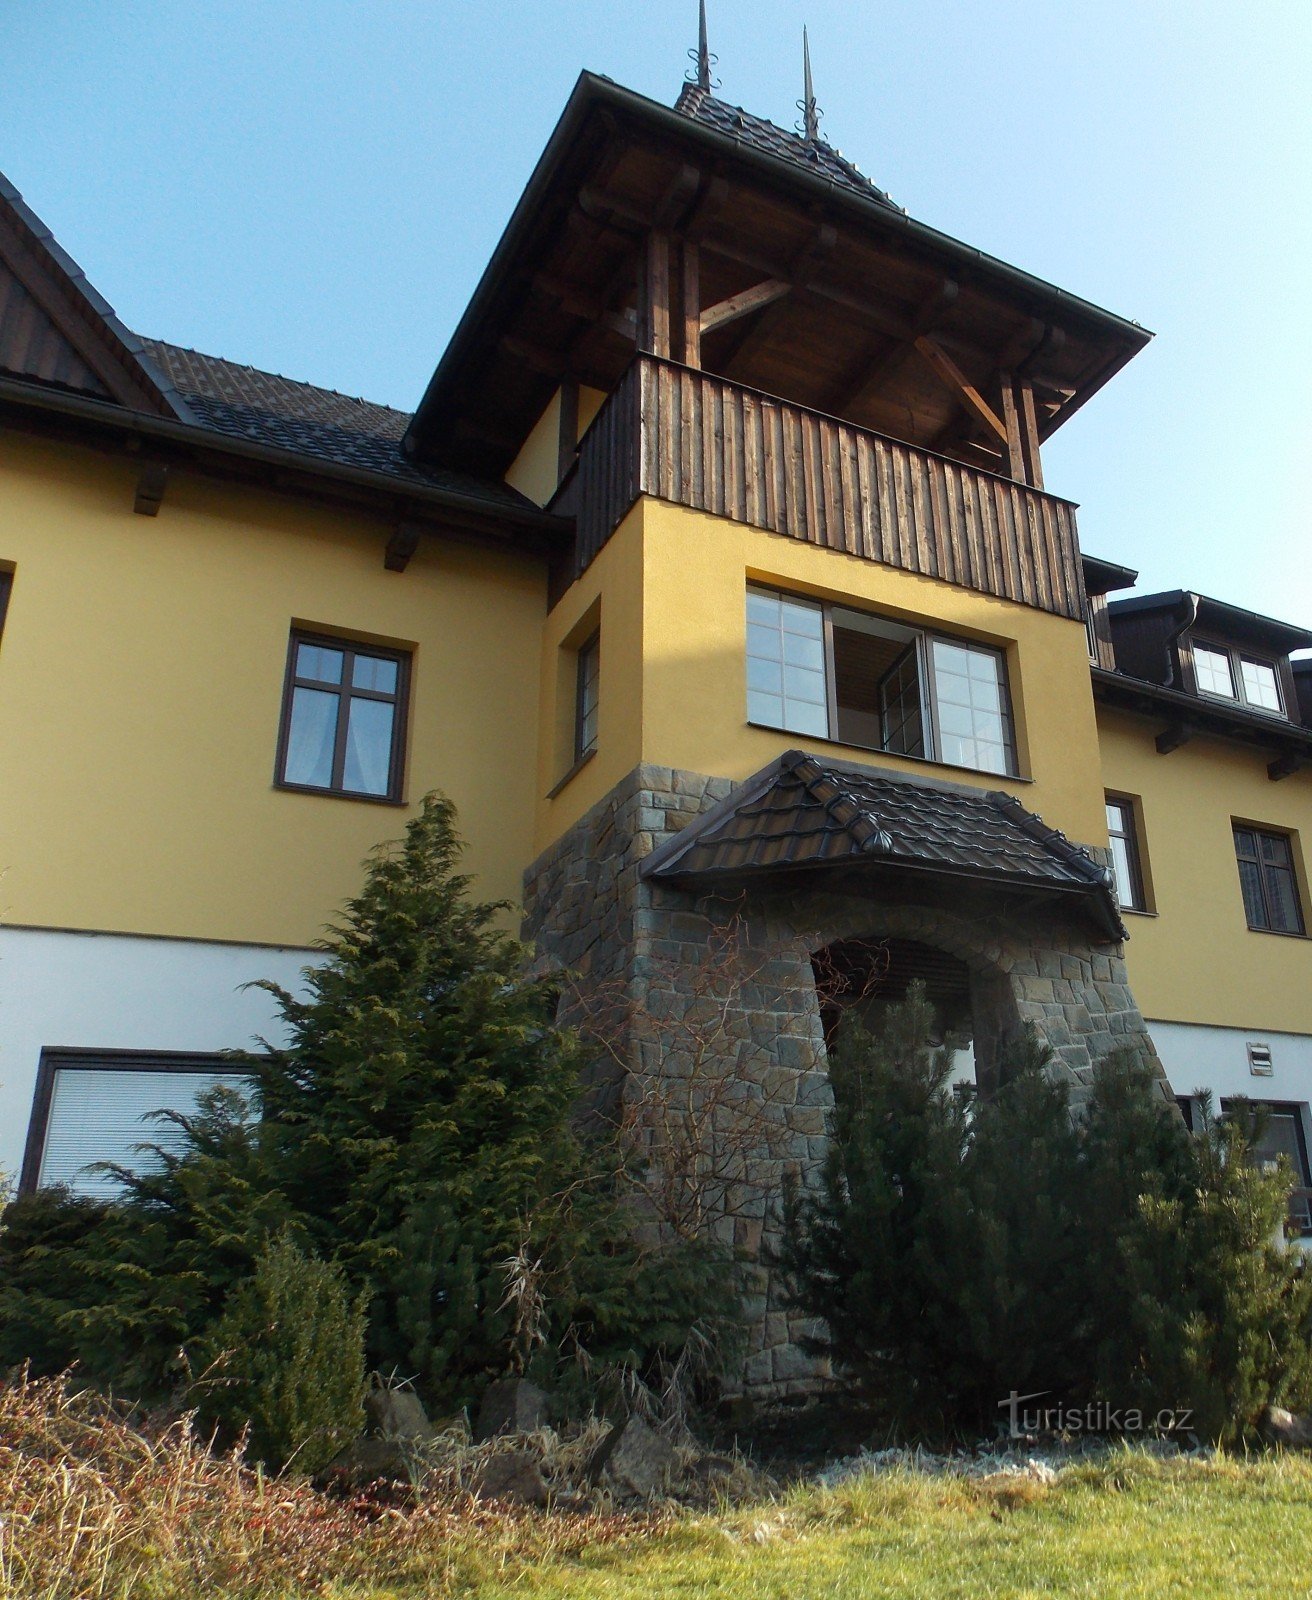 Valašský šenk και Hotel Ogar στο Pozlovice κοντά στο Luhačovice